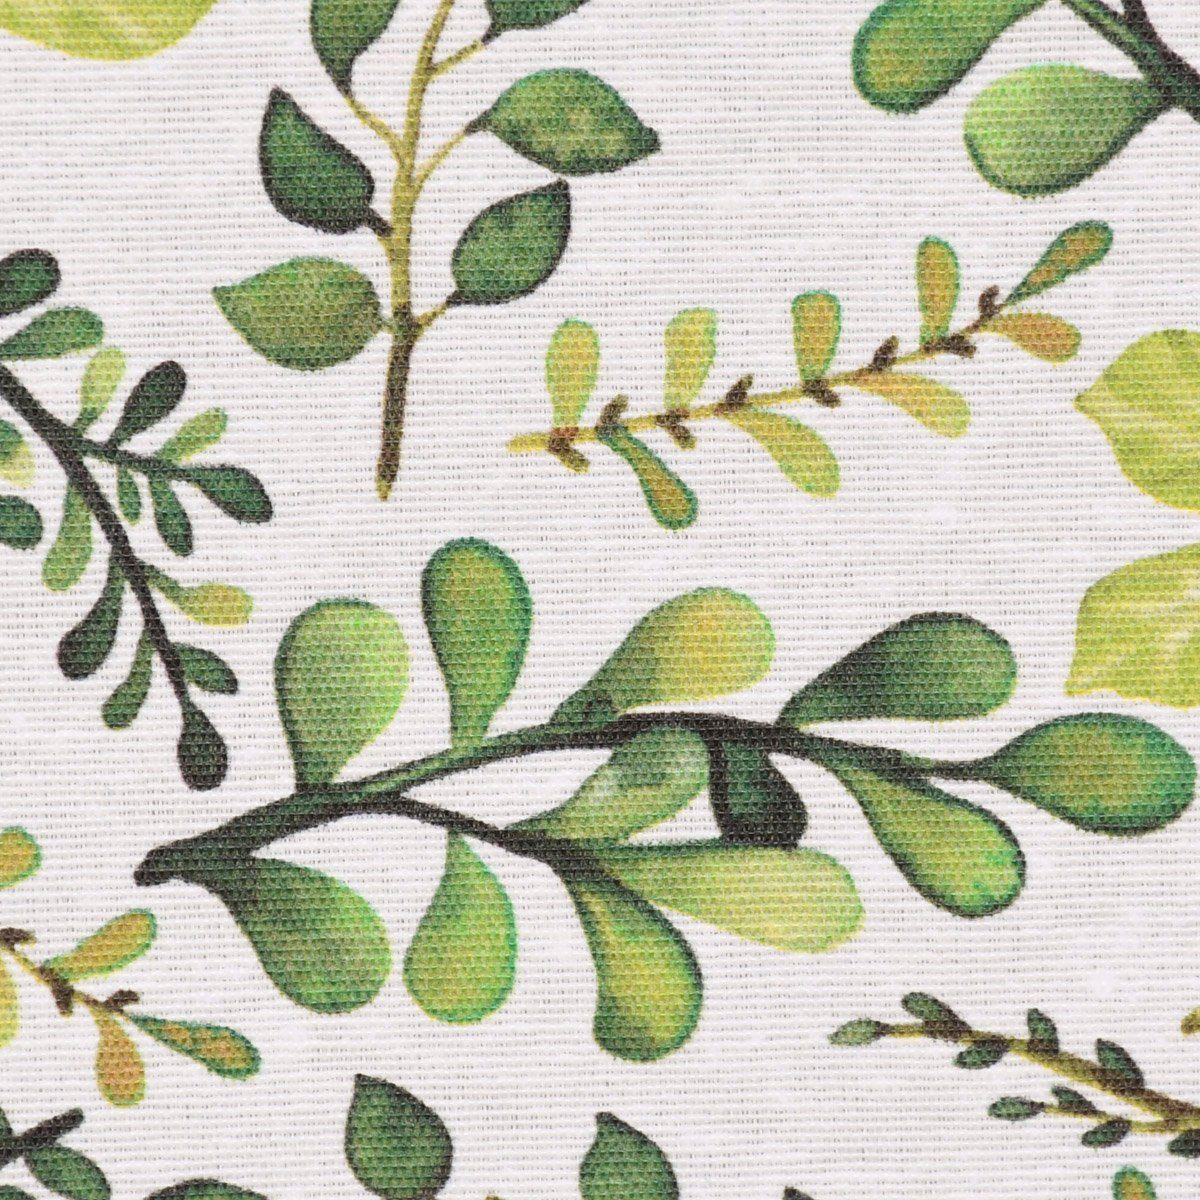 SCHÖNER LEBEN. Tischdecke SCHÖNER grün, Bertiz LEBEN. Blätter Zweige weiß Tischdecke handmade